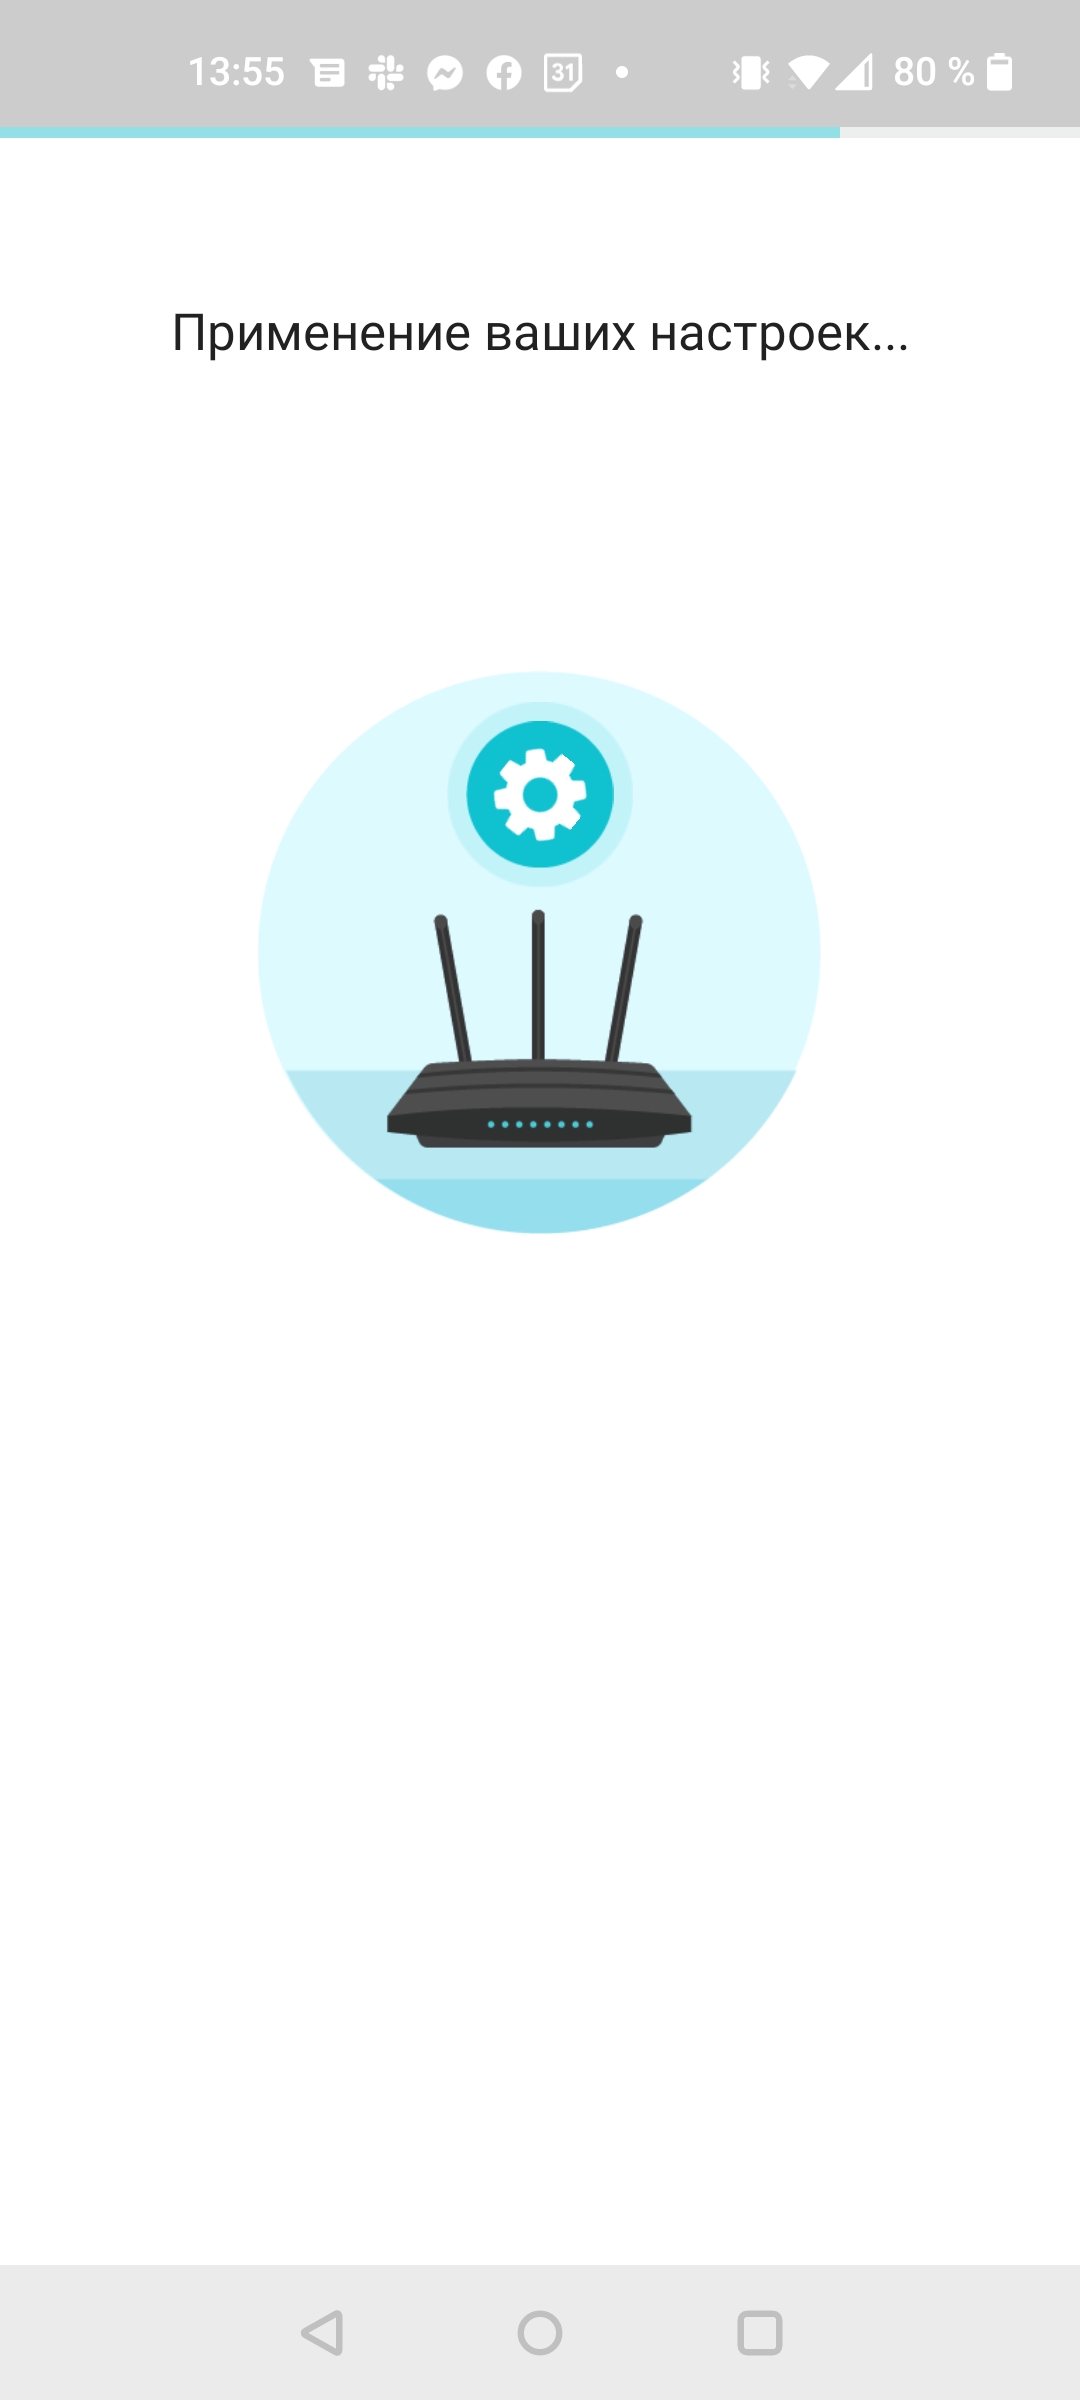 Безшовна домашня мережа Wi-Fi 6: огляд роутера TP-Link Archer AX23-40